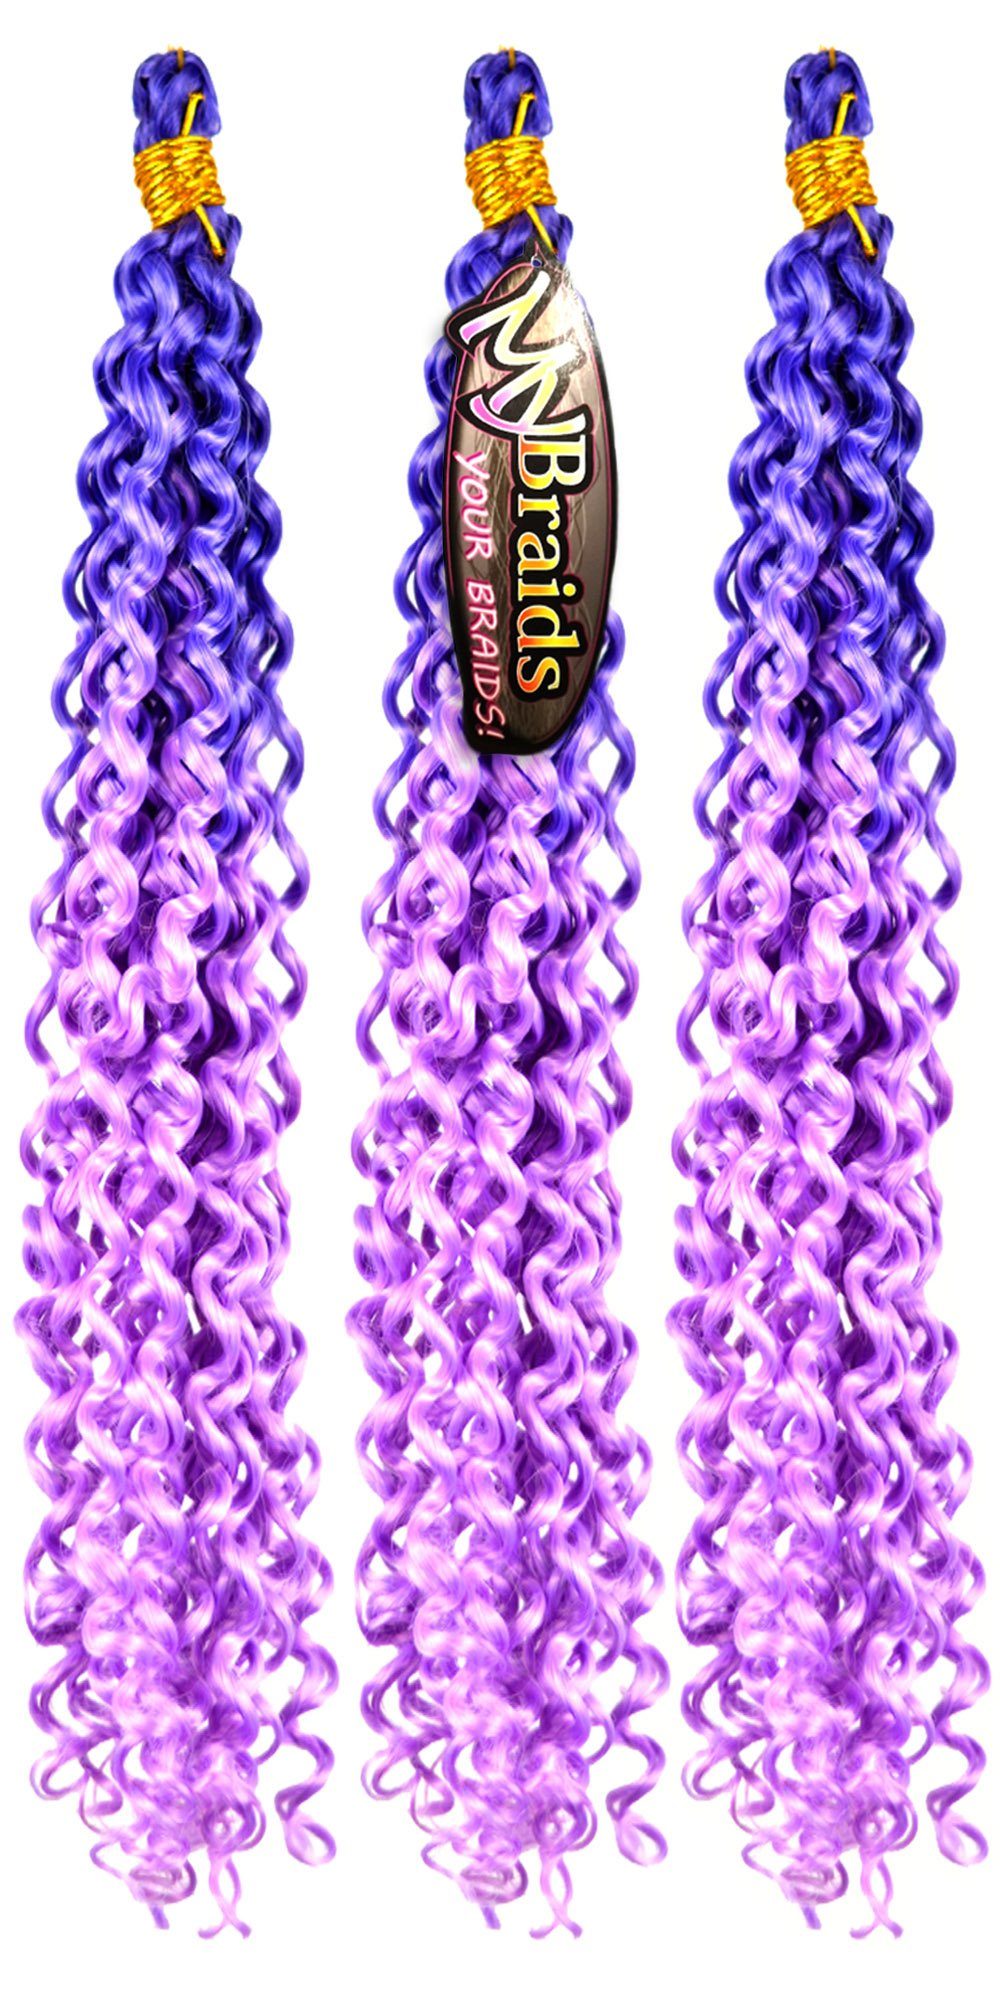 MyBraids YOUR BRAIDS! Kunsthaar-Extension Deep Wave Crochet Braids 3er Pack Flechthaar Ombre Zöpfe Wellig 21-WS Blauviolett-Hellviolett